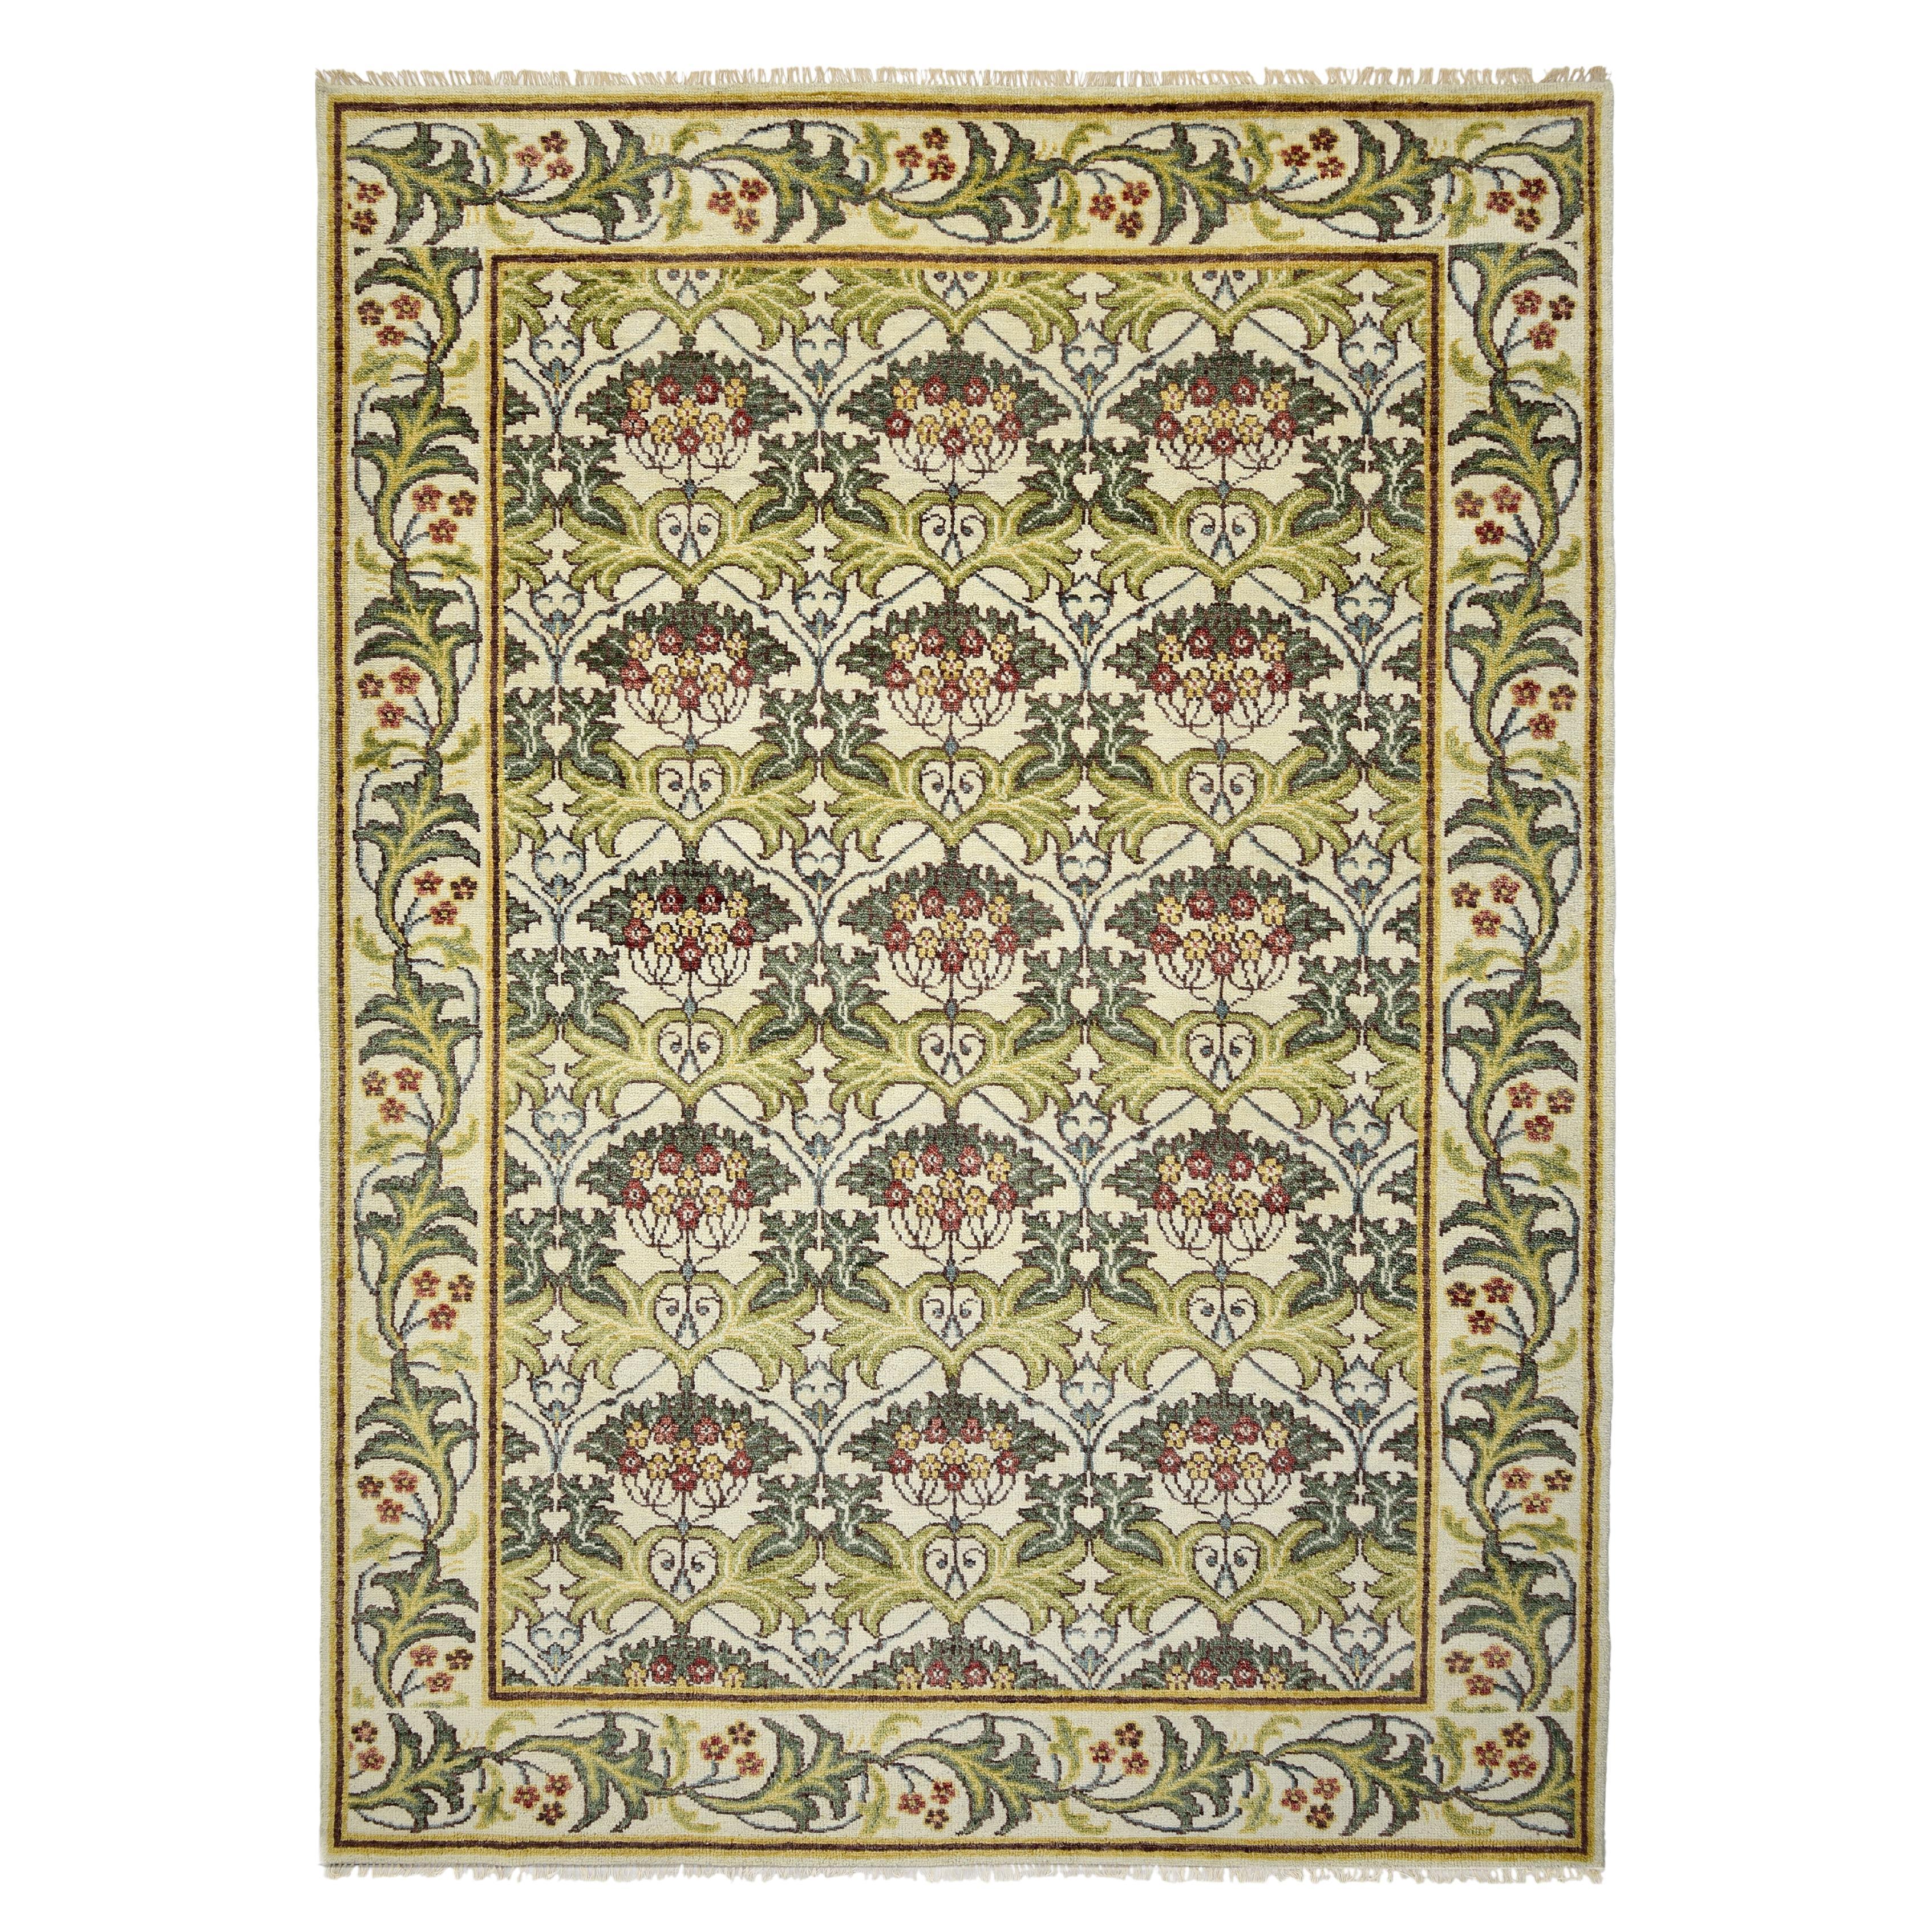 William Morris inspirierter Teppich in Elfenbein